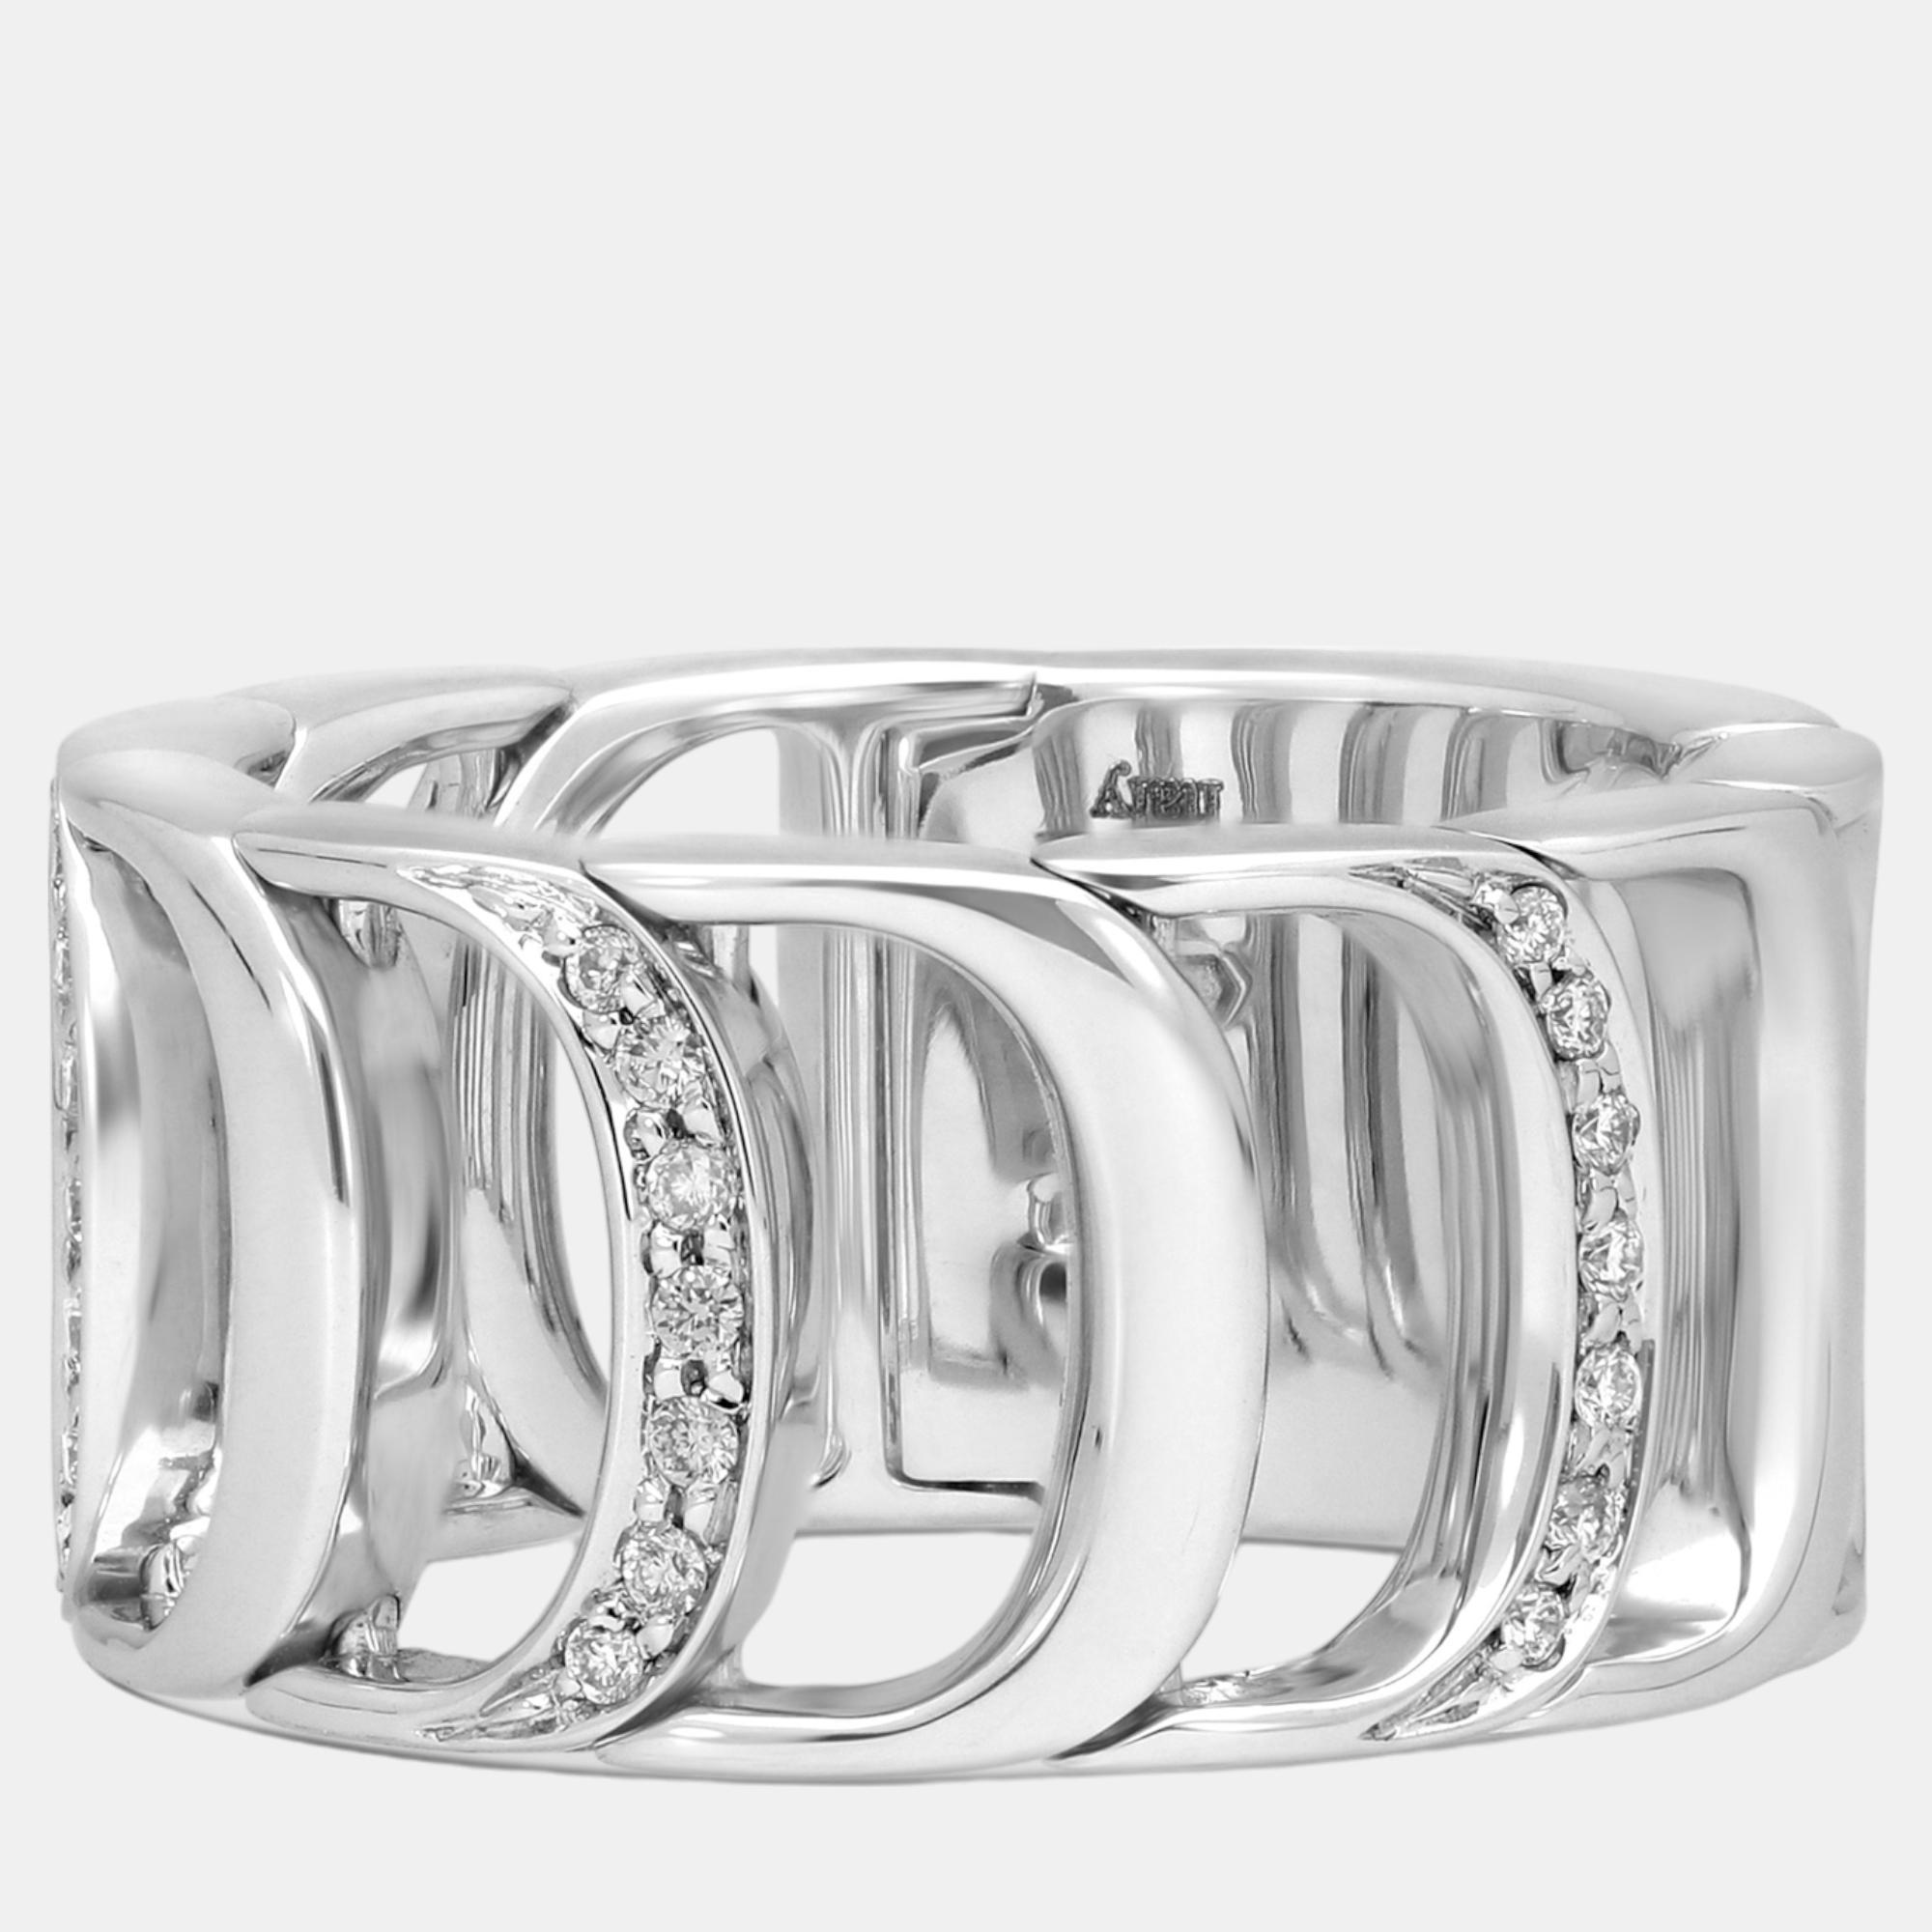 Damiani 18k white gold, diamond band ring